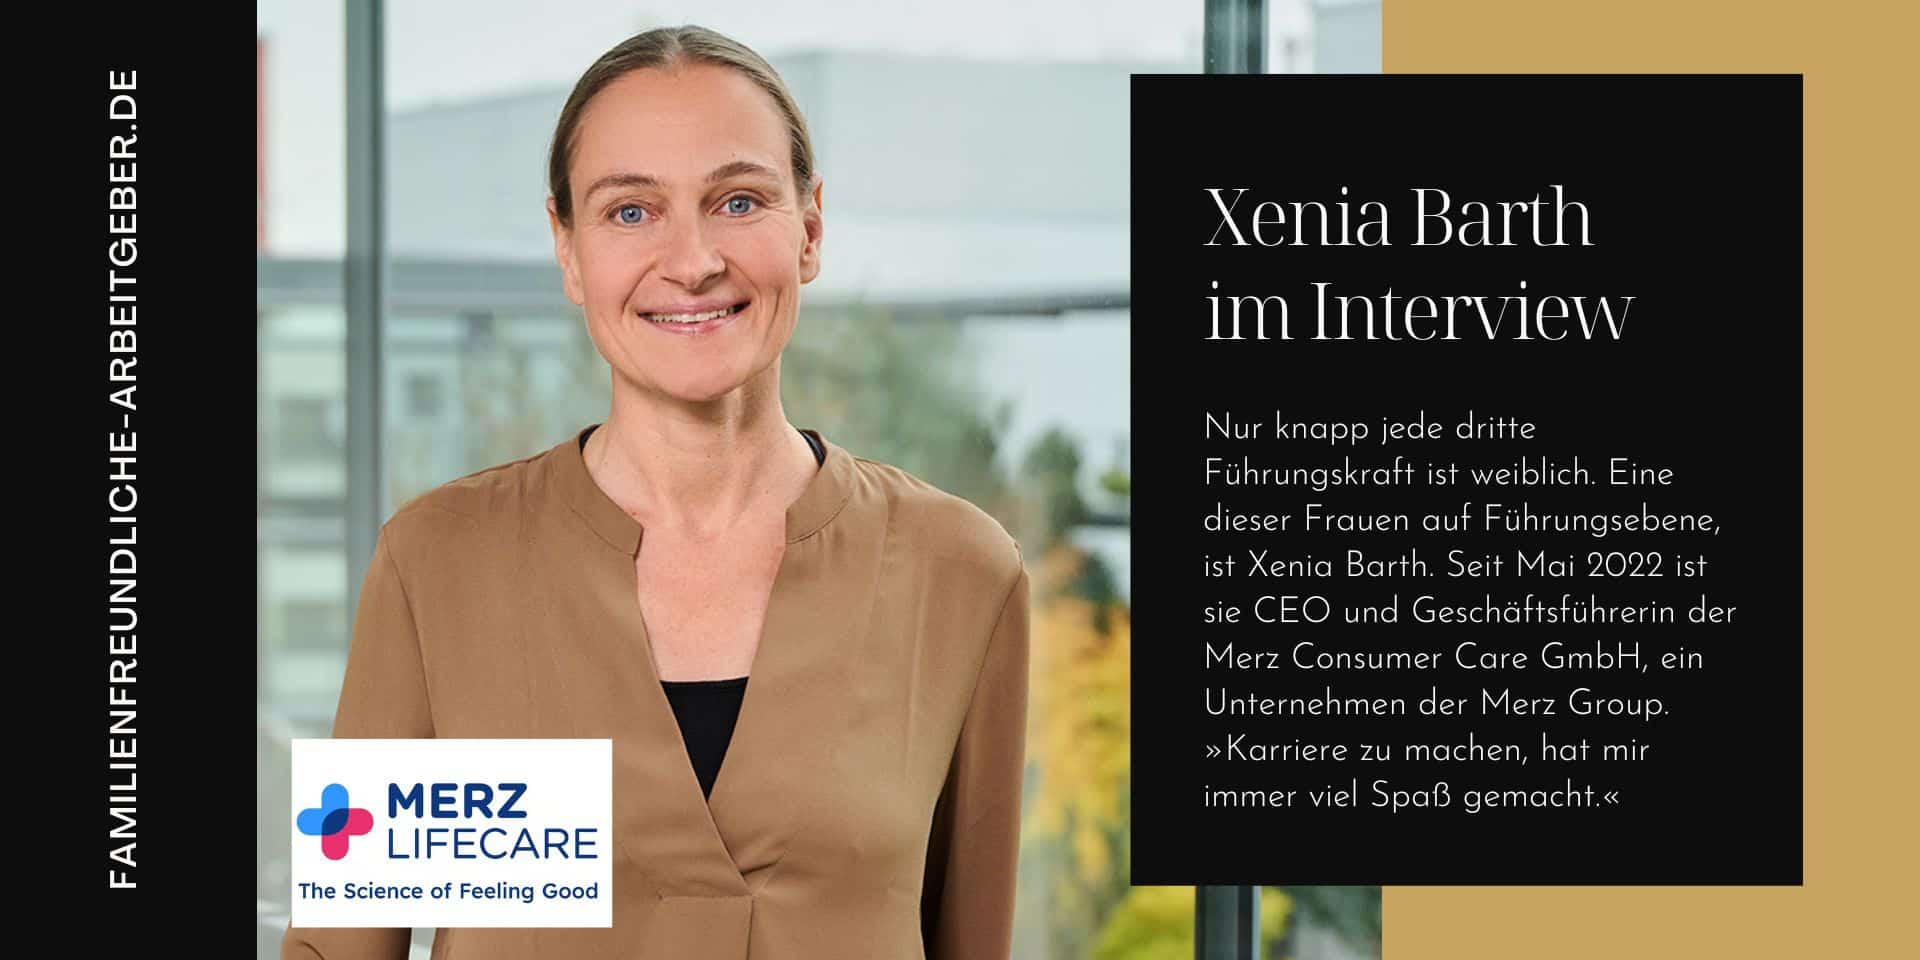 Familienfreundliche Arbeitgeber - Xenia Barth - Interview - Merz Lifecare